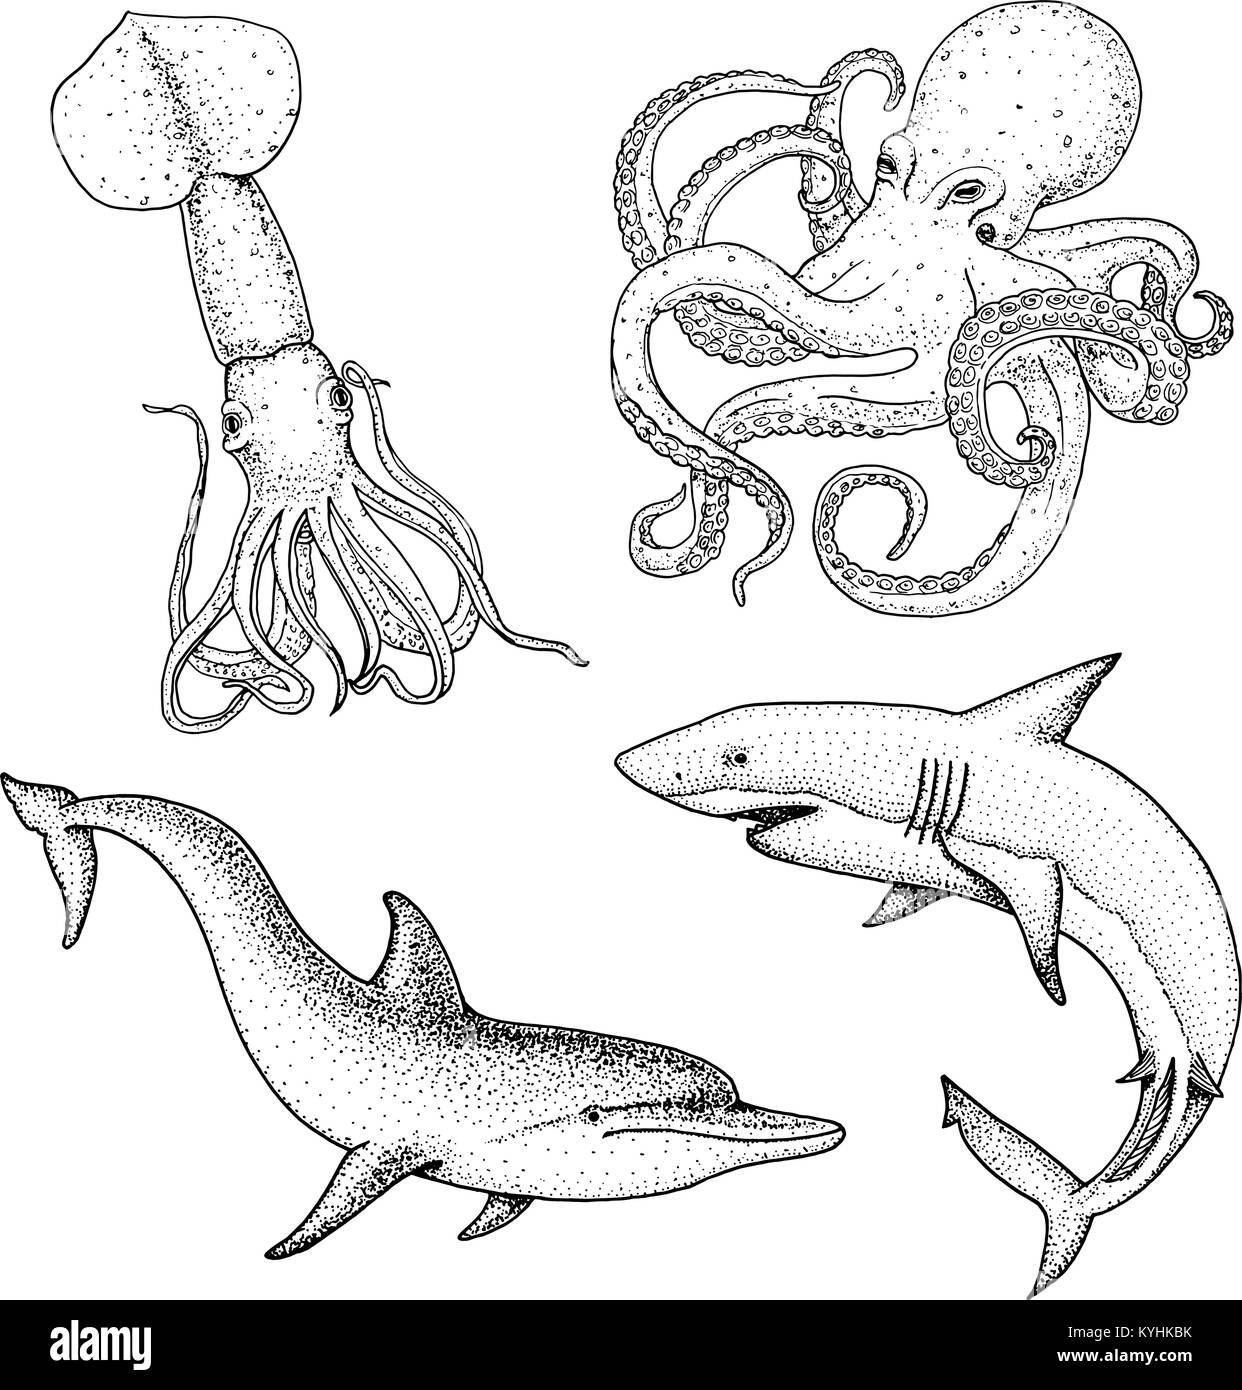 Meer Kreatur oder Fische Delphin und Weißen Hai. Kraken und Tintenfische, Calamari. graviert Hand in alte Skizze gezeichnet, Vintage Style. nautischen oder Marine. Tiere, die in den Ozean. Stock Vektor